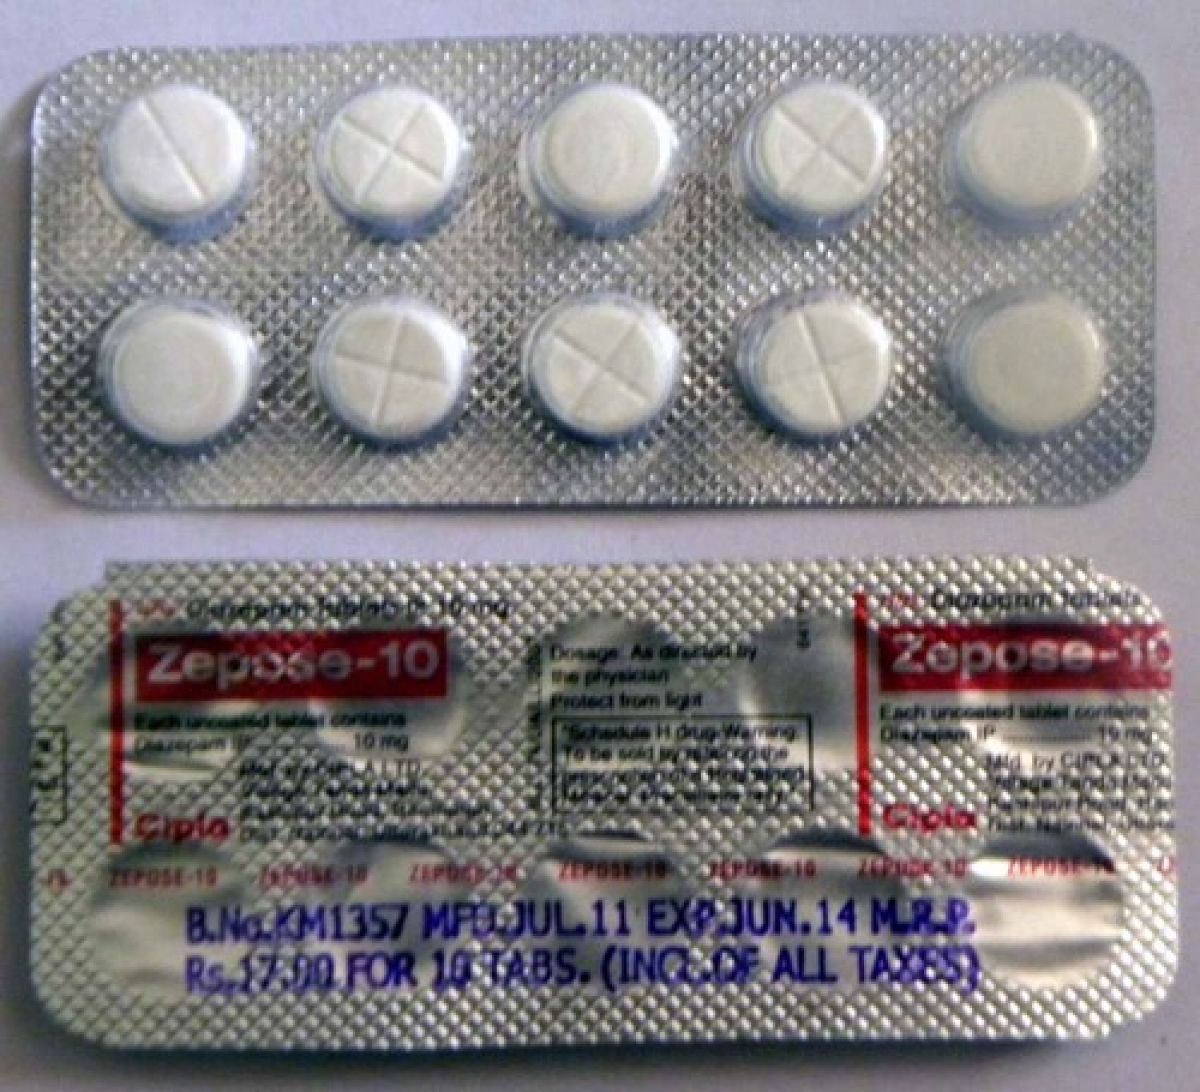 objednejte si diazepam 5 mg bez lékařského předpisu